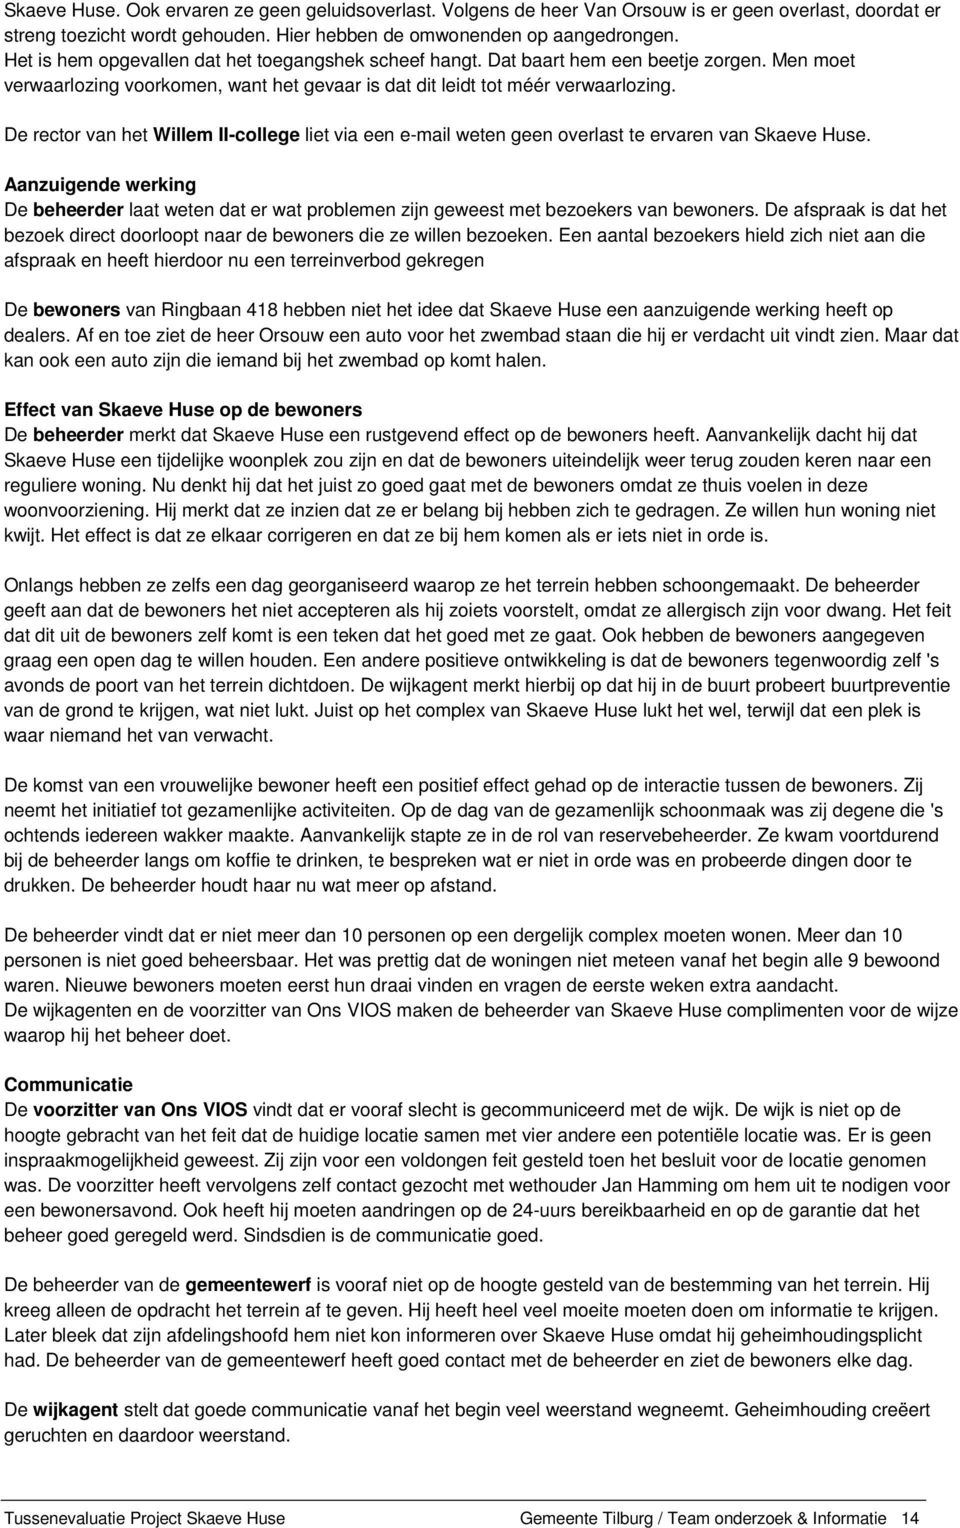 De rector van het Willem II-college liet via een e-mail weten geen overlast te ervaren van Skaeve Huse.